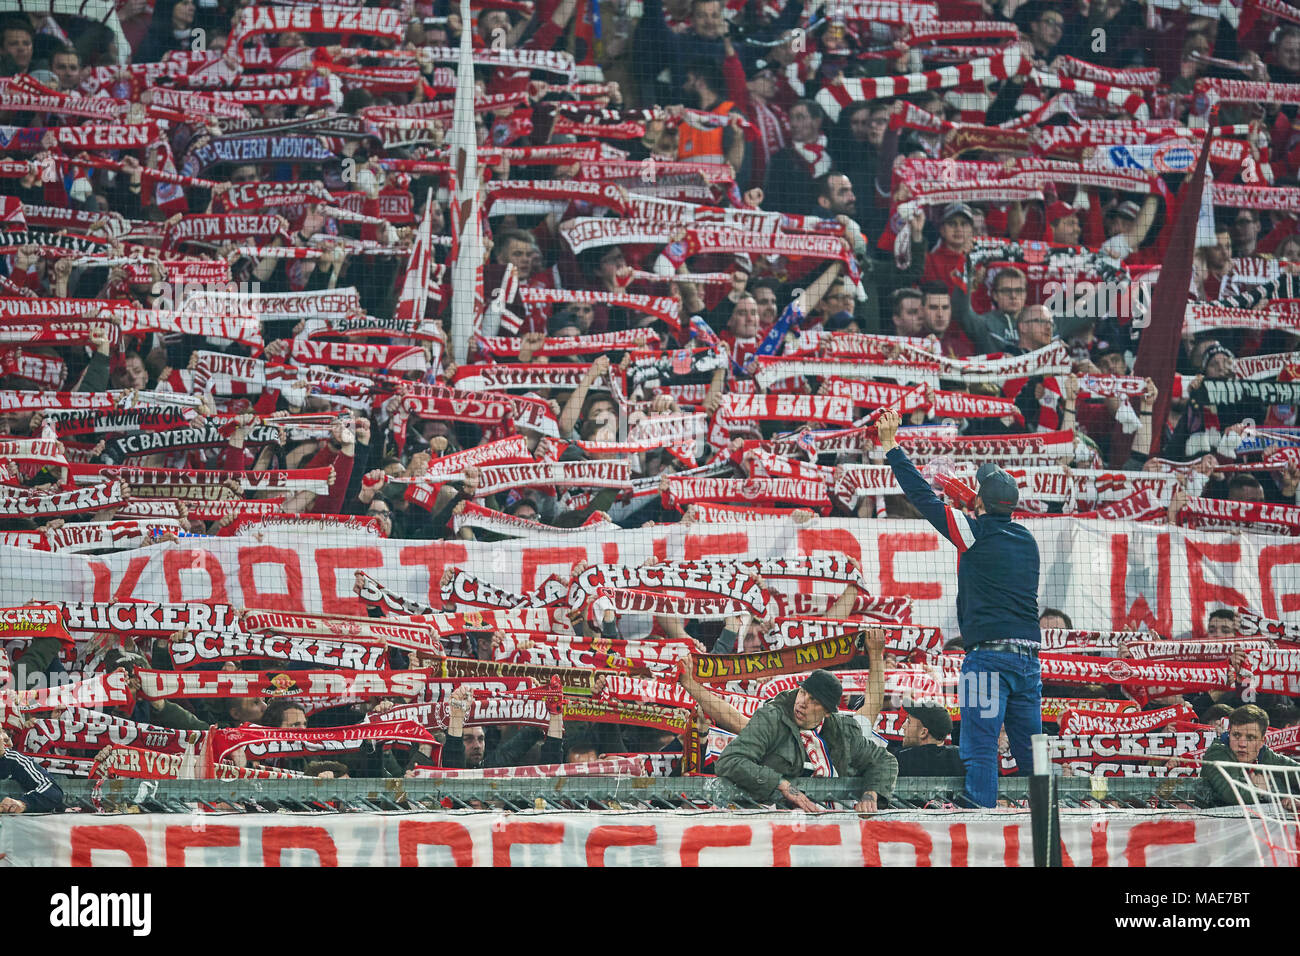 Football FC Bayern Munich, Munich, le 31 mars 2018 fans célèbrent le FC BAYERN MUNICH - Borussia Dortmund 6-0 1.ligue de soccer allemand , Munich, le 31 mars 2018, la saison 2017-2018 © Peter Schatz / Alamy Live News Banque D'Images